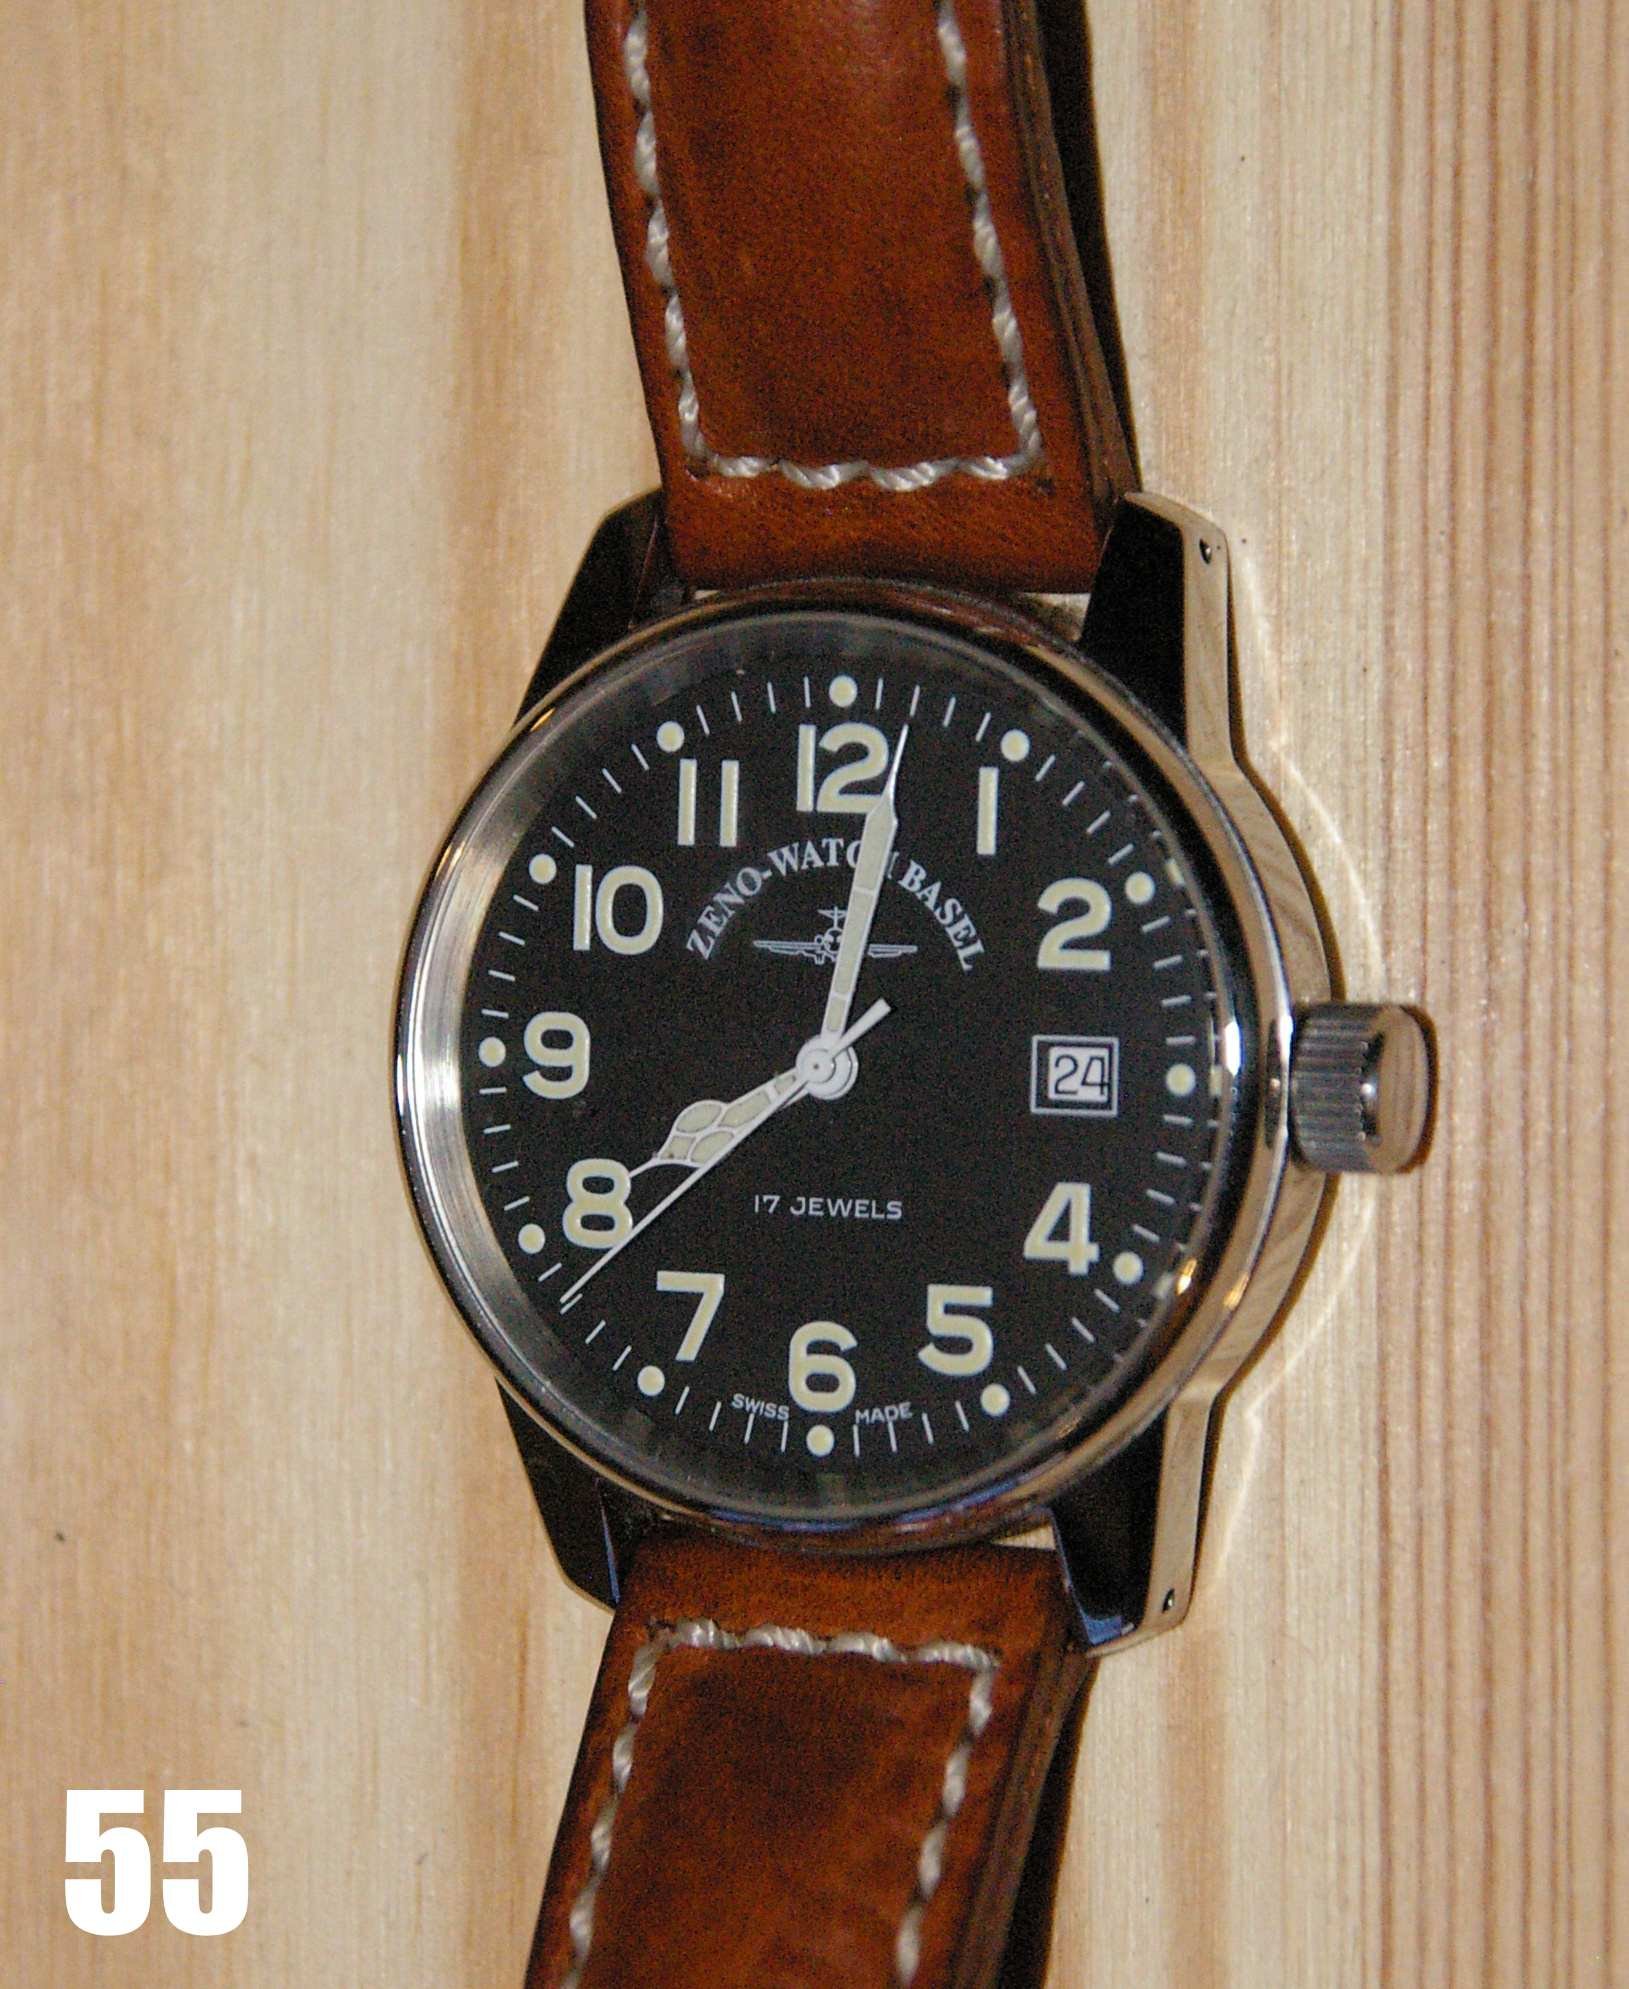 Buy Zeno Pilot bulhed men's Watch 6528-THD-A1 - Ashford.com